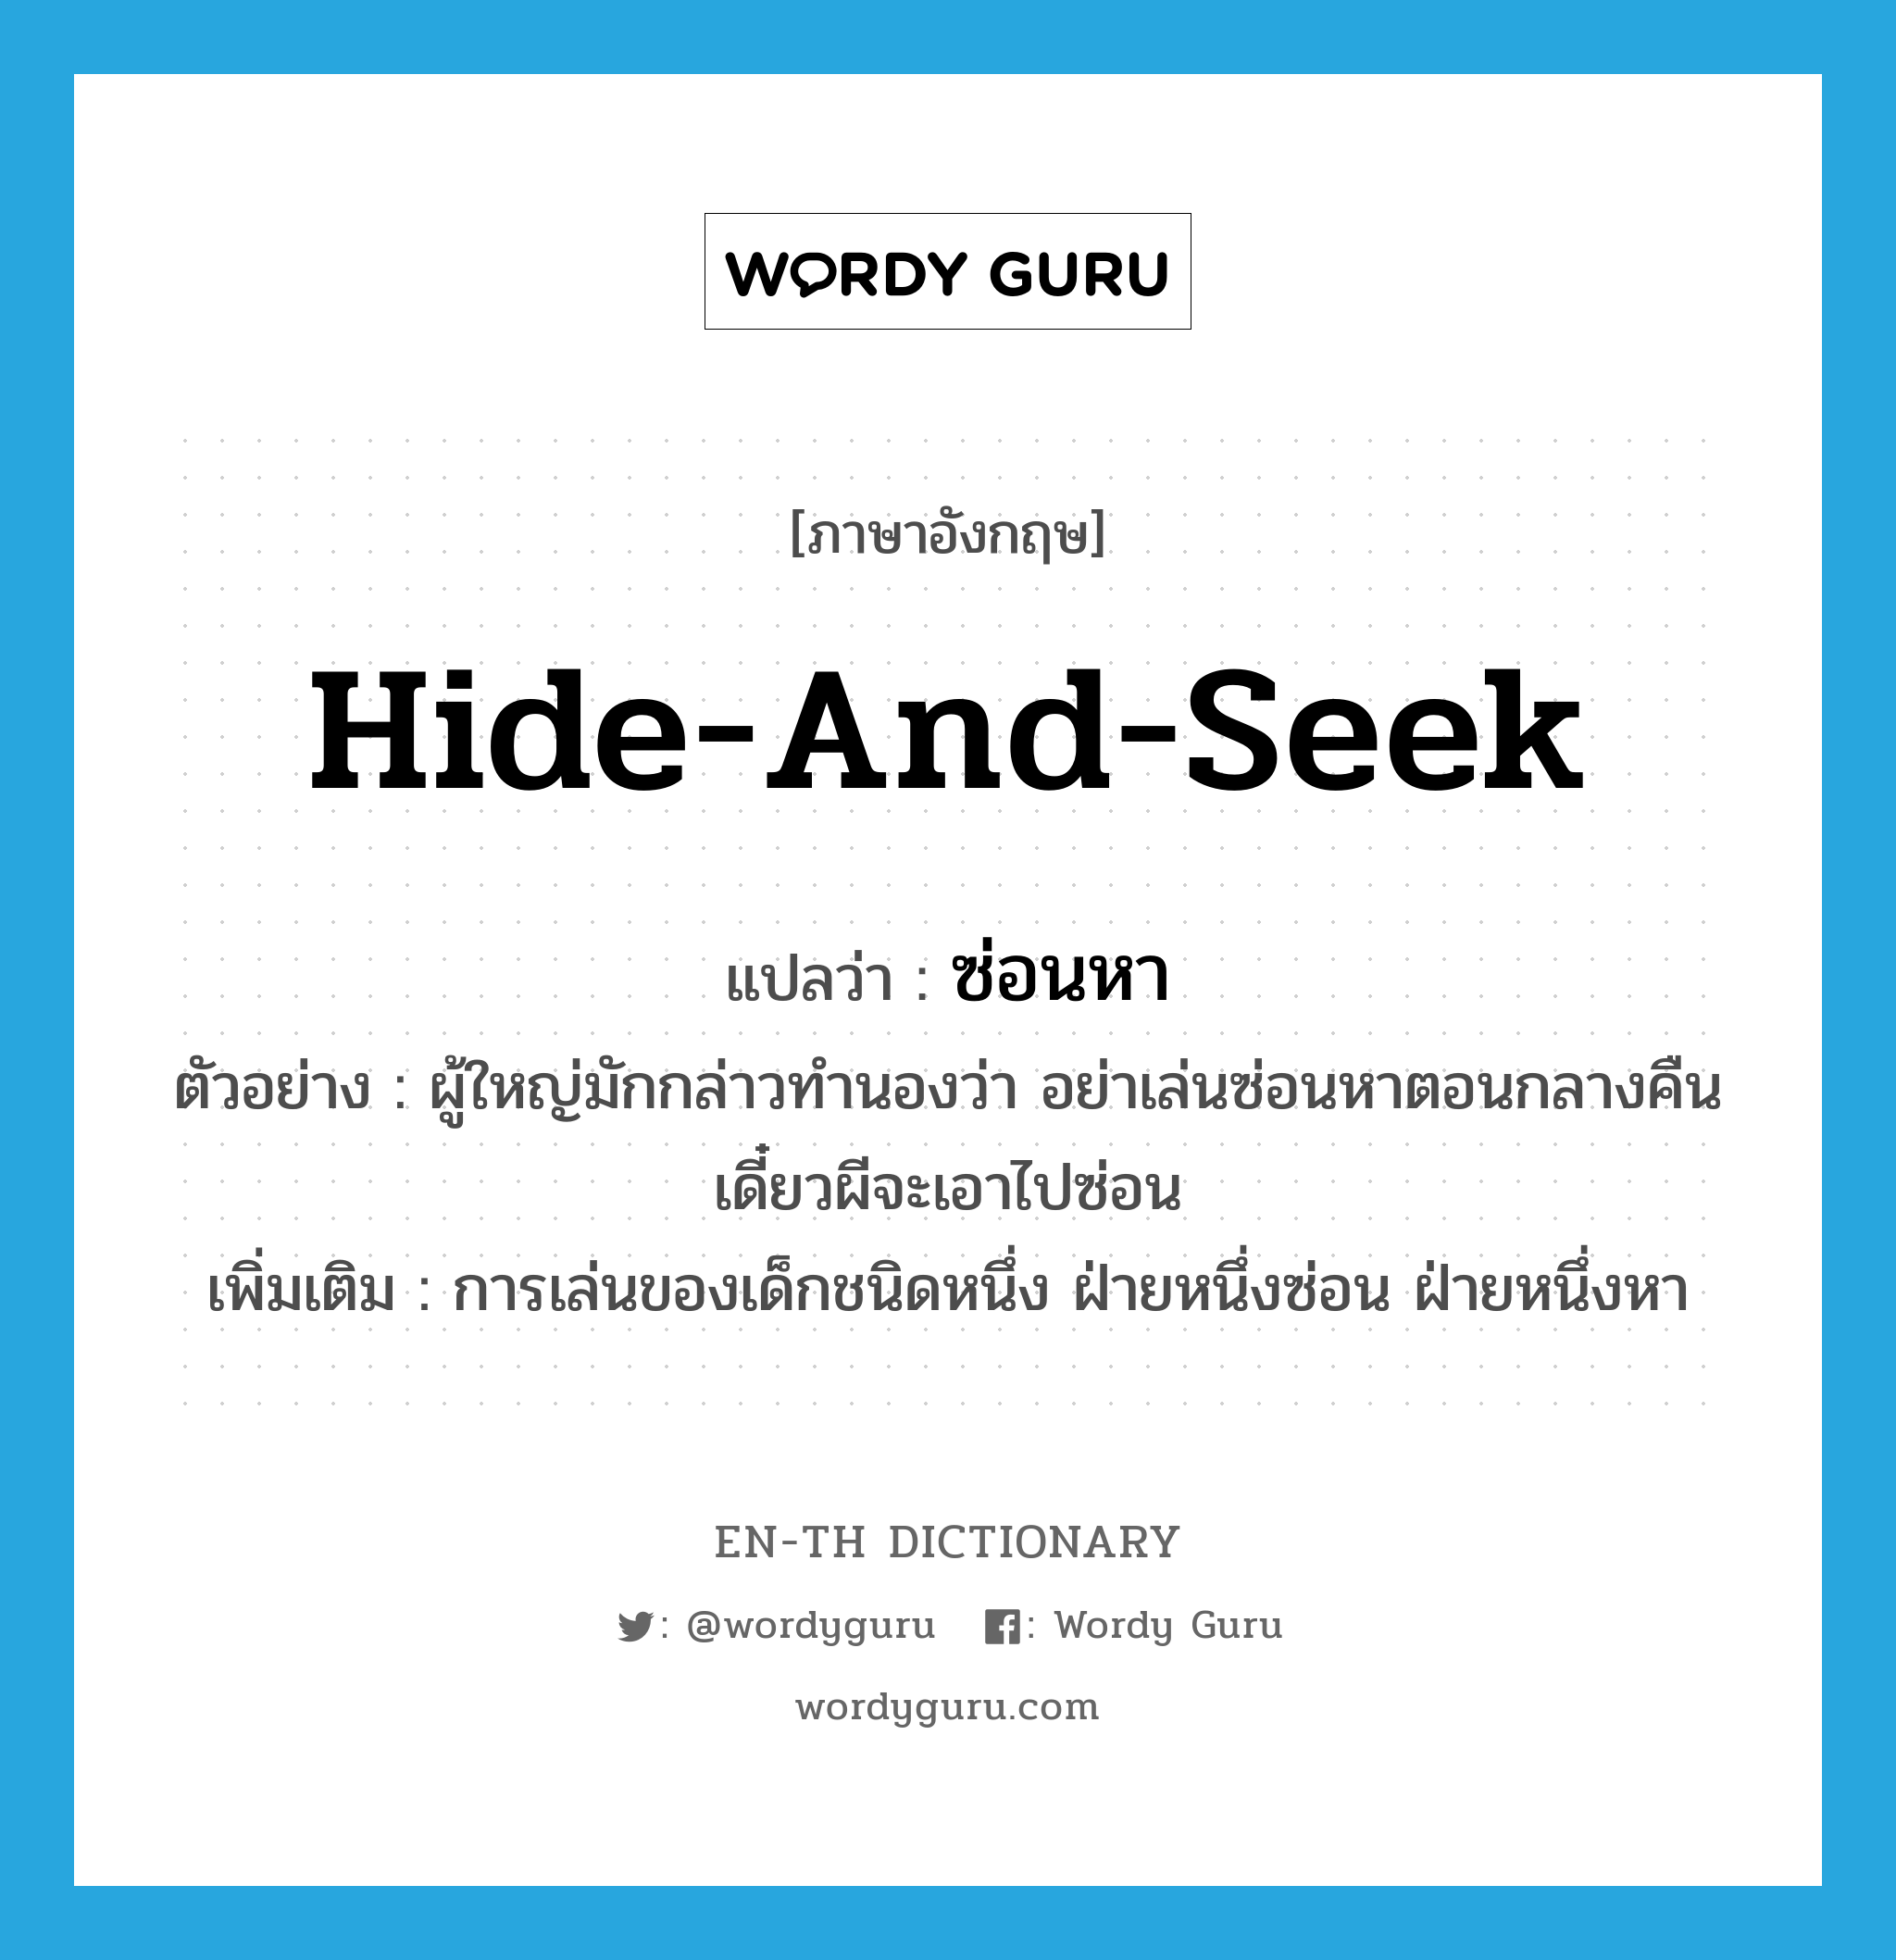 hide-and-seek แปลว่า?, คำศัพท์ภาษาอังกฤษ hide-and-seek แปลว่า ซ่อนหา ประเภท N ตัวอย่าง ผู้ใหญ่มักกล่าวทำนองว่า อย่าเล่นซ่อนหาตอนกลางคืน เดี๋ยวผีจะเอาไปซ่อน เพิ่มเติม การเล่นของเด็กชนิดหนึ่ง ฝ่ายหนึ่งซ่อน ฝ่ายหนึ่งหา หมวด N